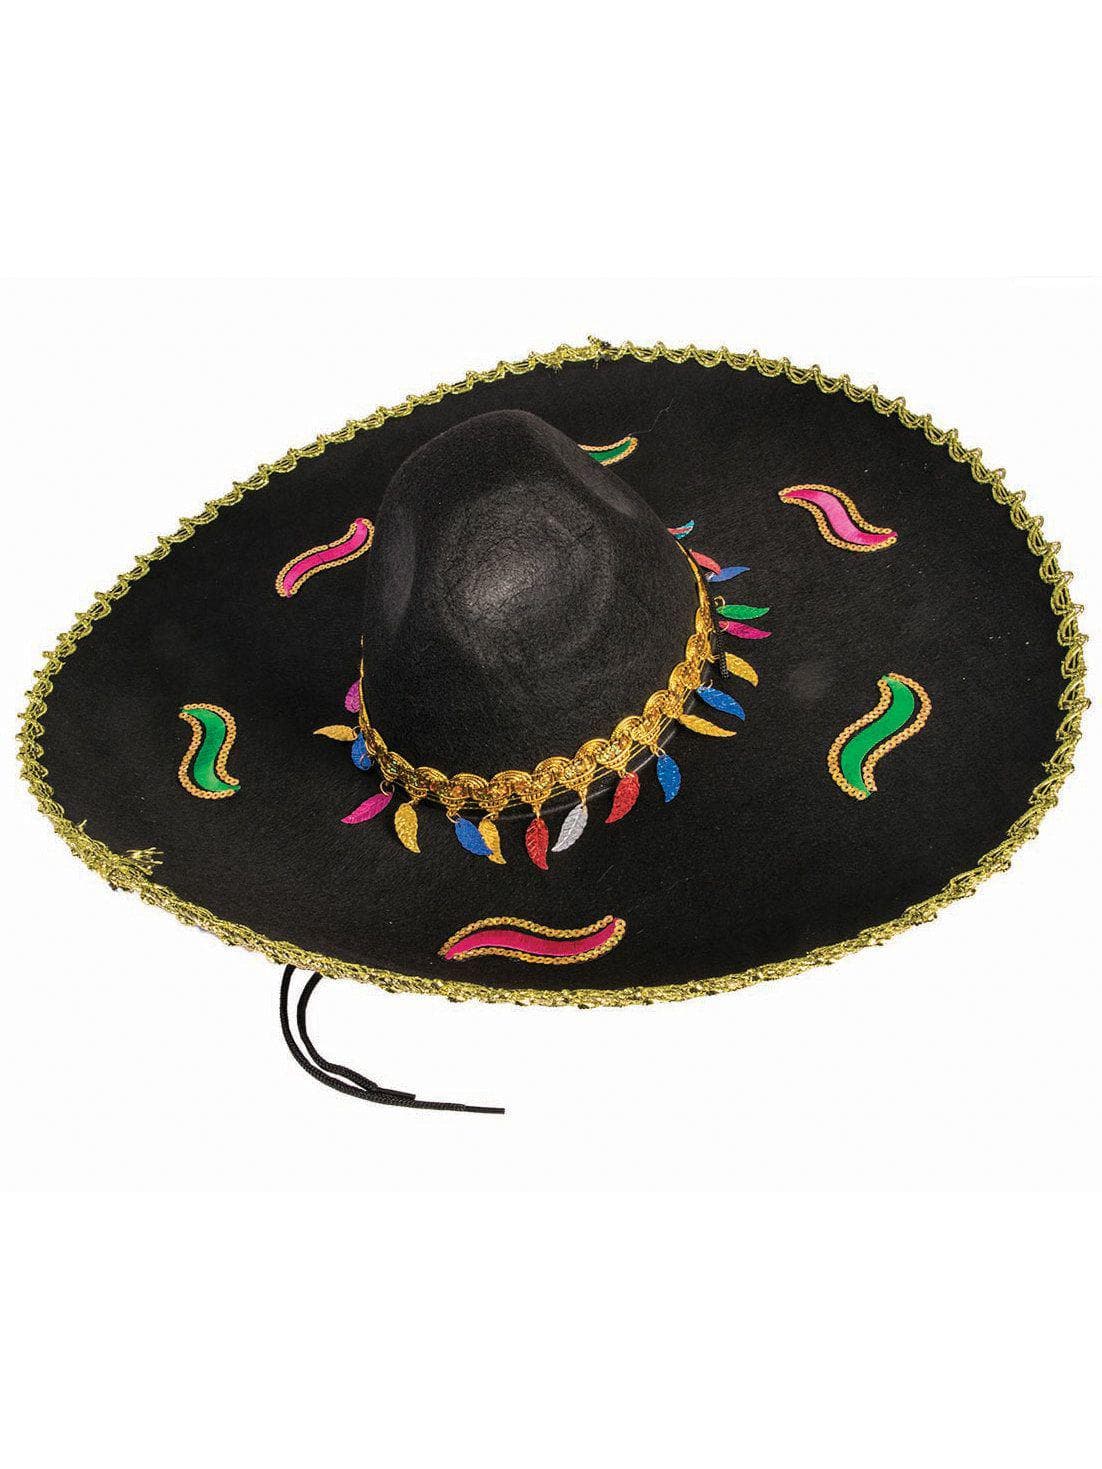 Black and Multi-colored Sombrero - costumes.com